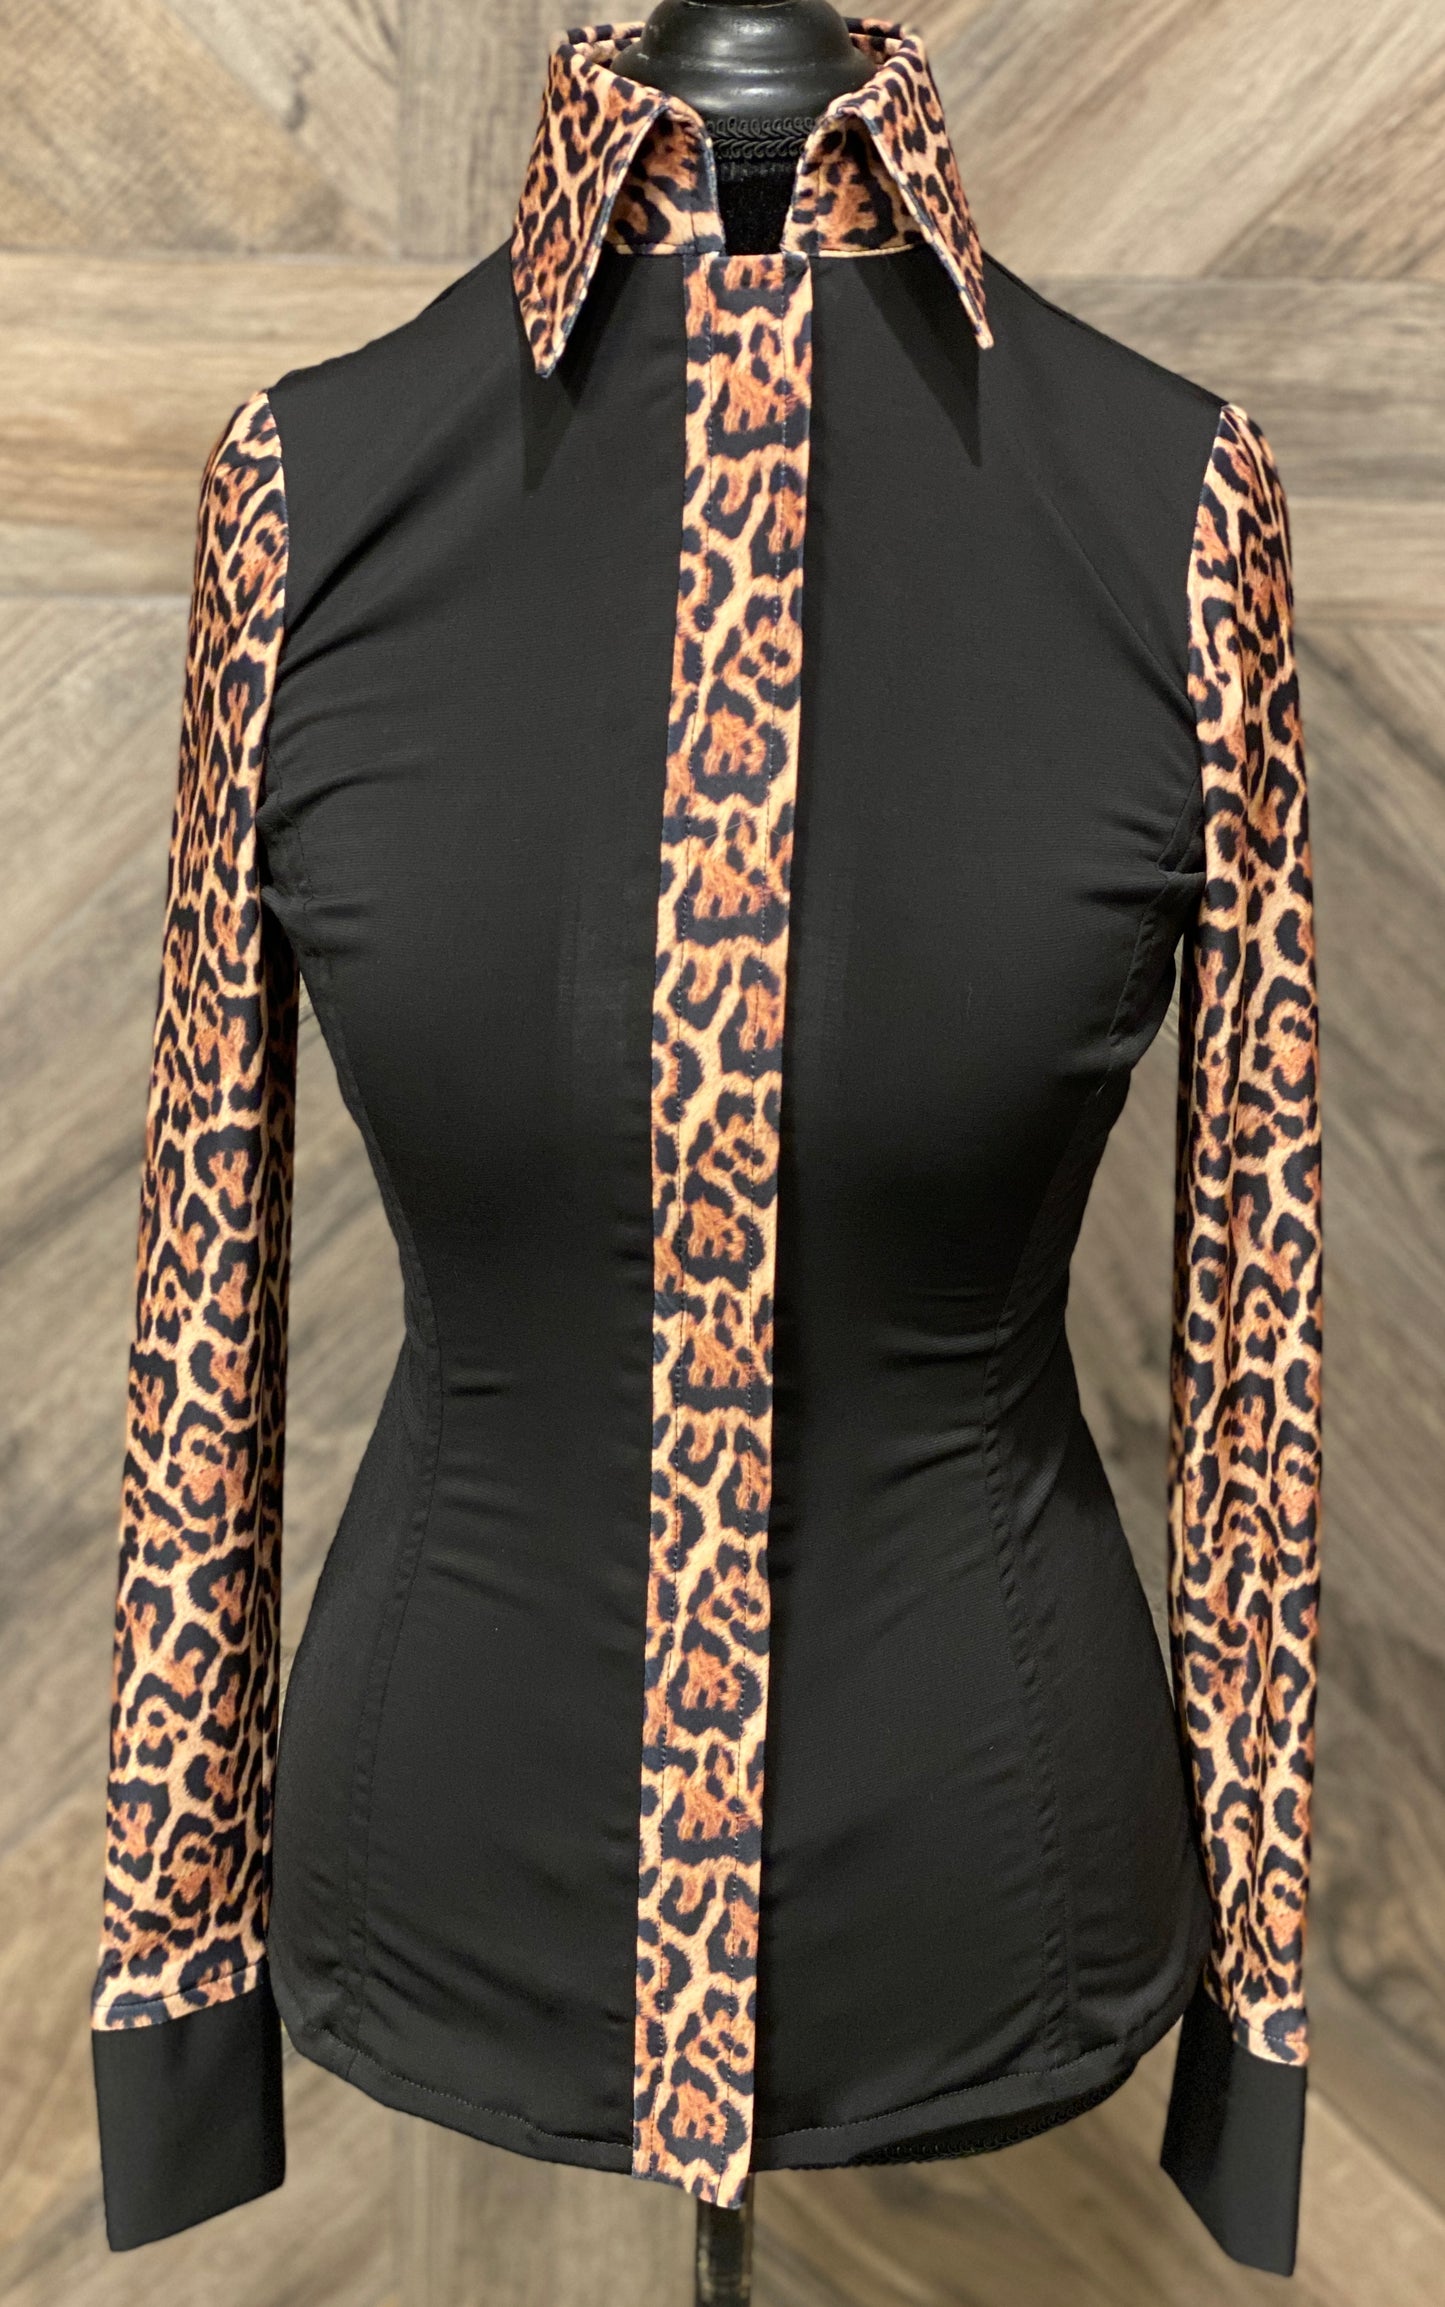 Black Leopard Hidden Zipper Light Weight Fitted Shirt